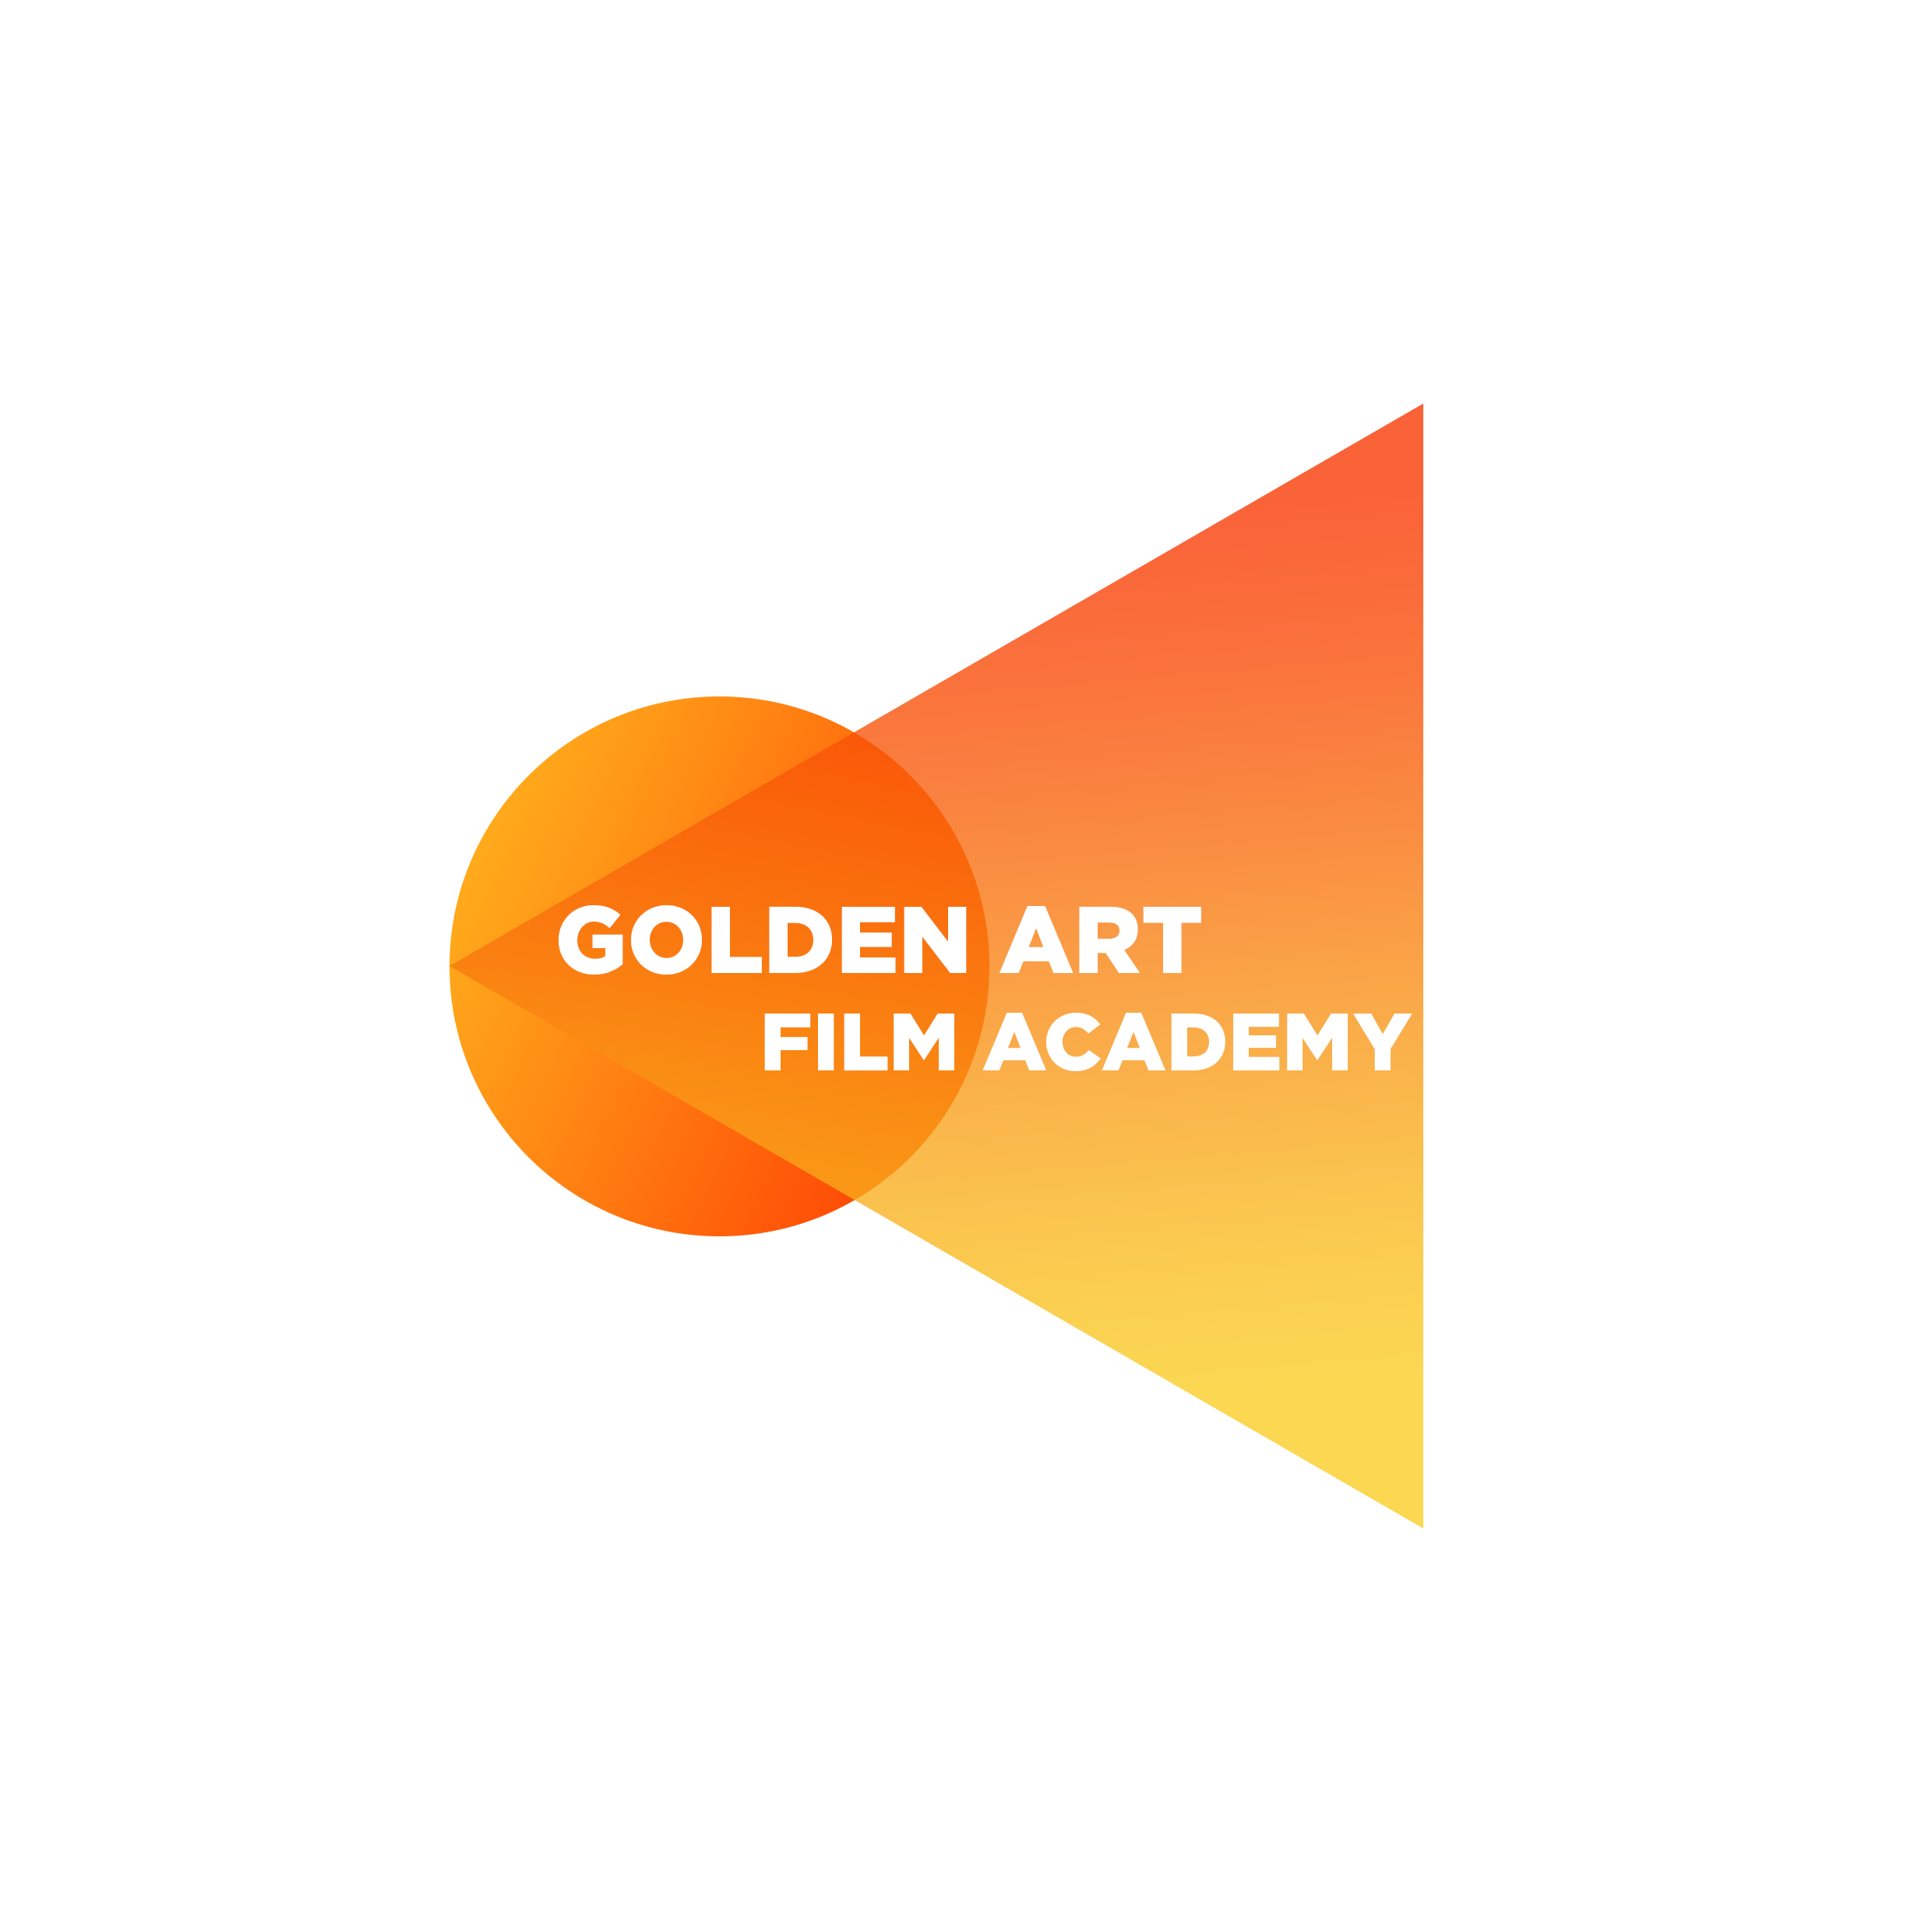 GOLDEN ART FILM ACADEMY